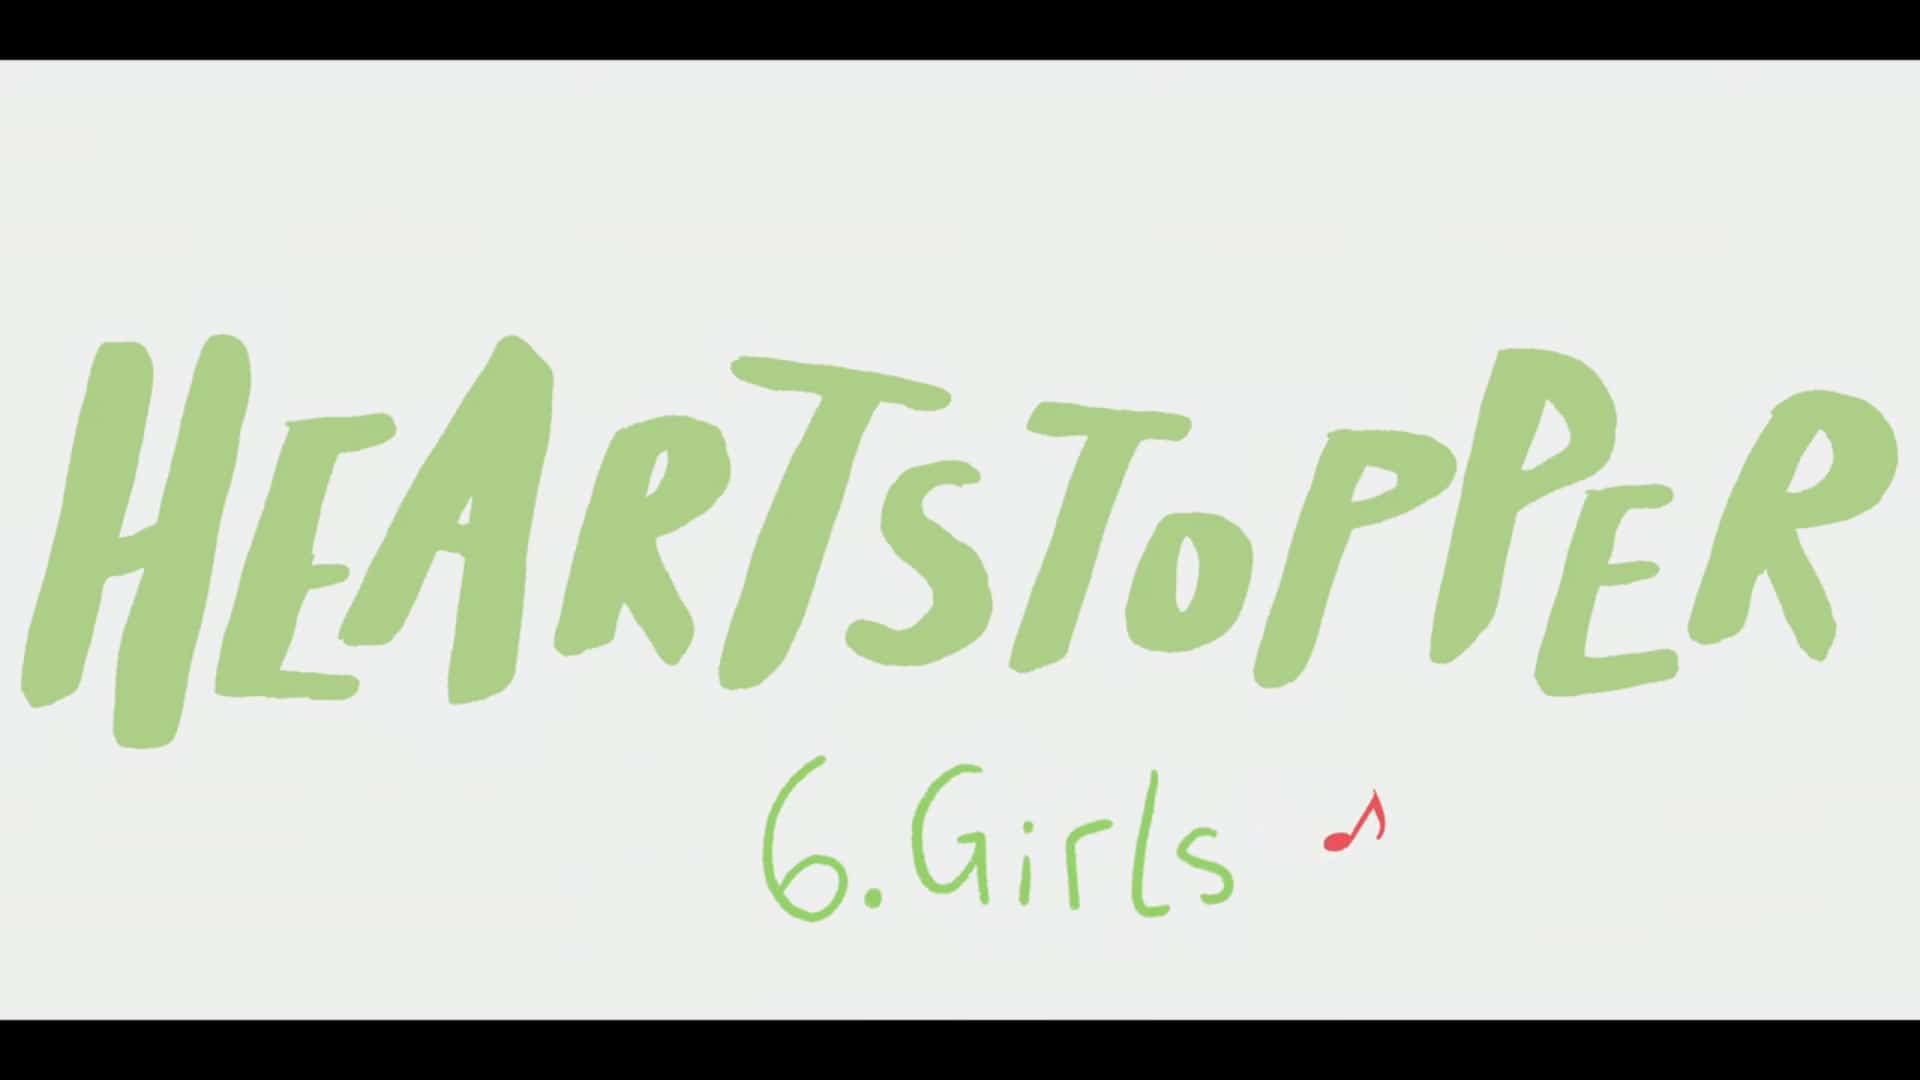 Title Card - Heartstopper Season 1 Episode 6 “Girls”